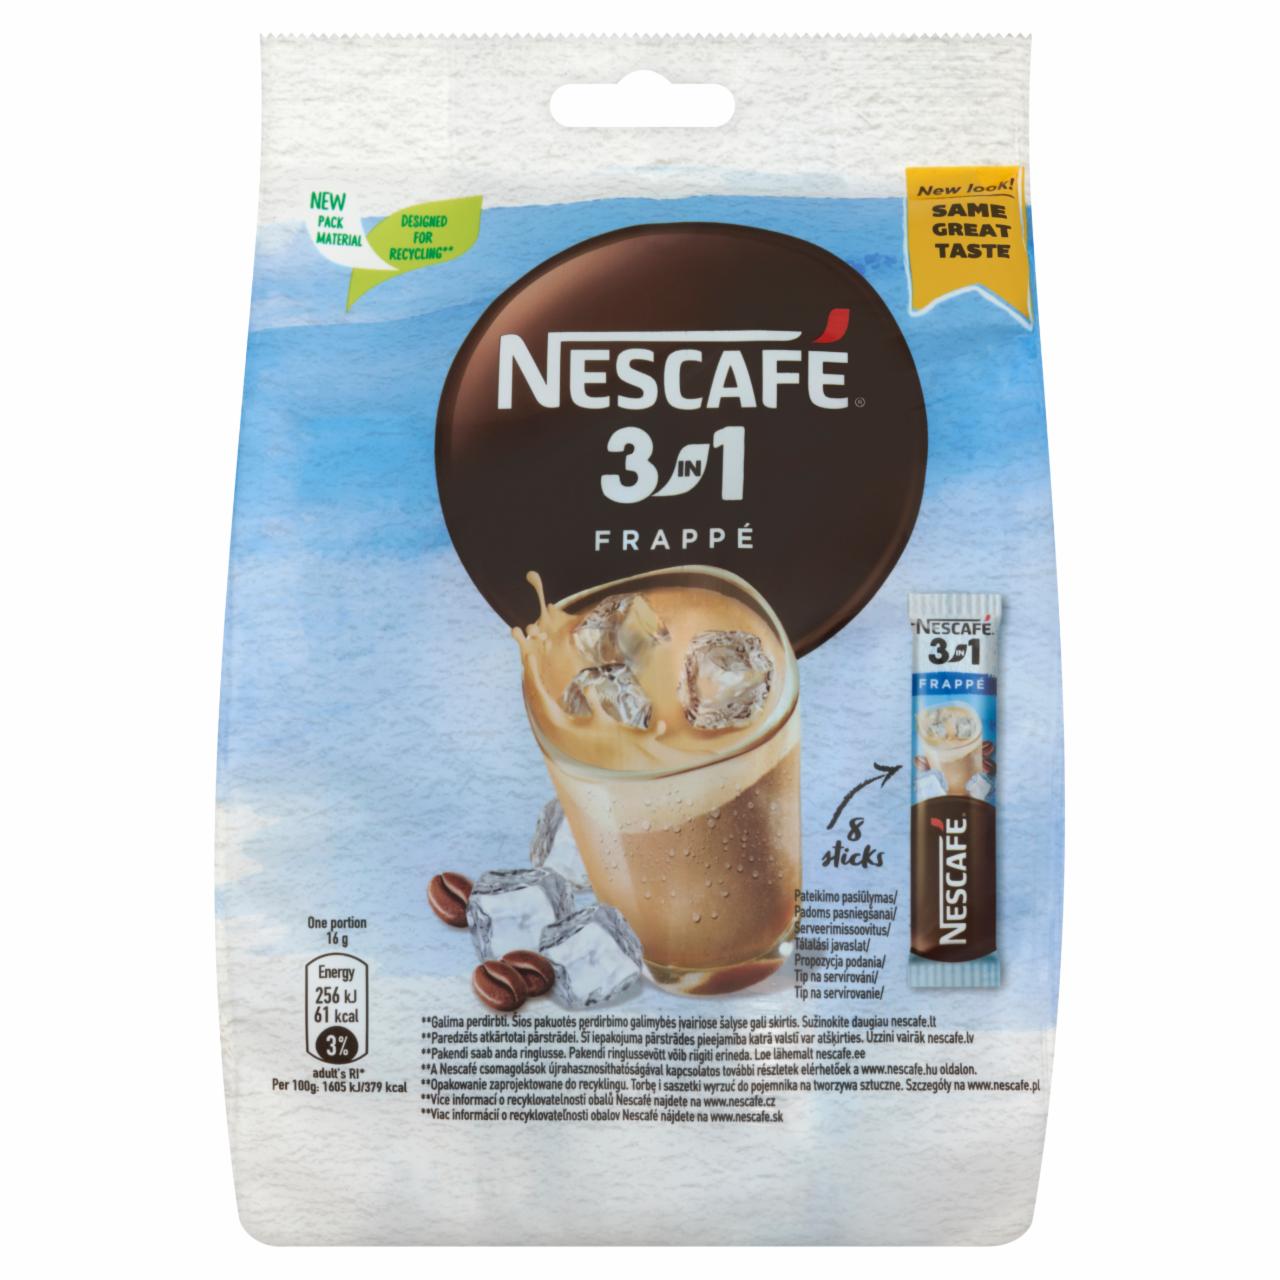 Képek - Nescafé 3in1 Frappé azonnal oldódó kávéspecialitás 8 x 16 g (128 g)